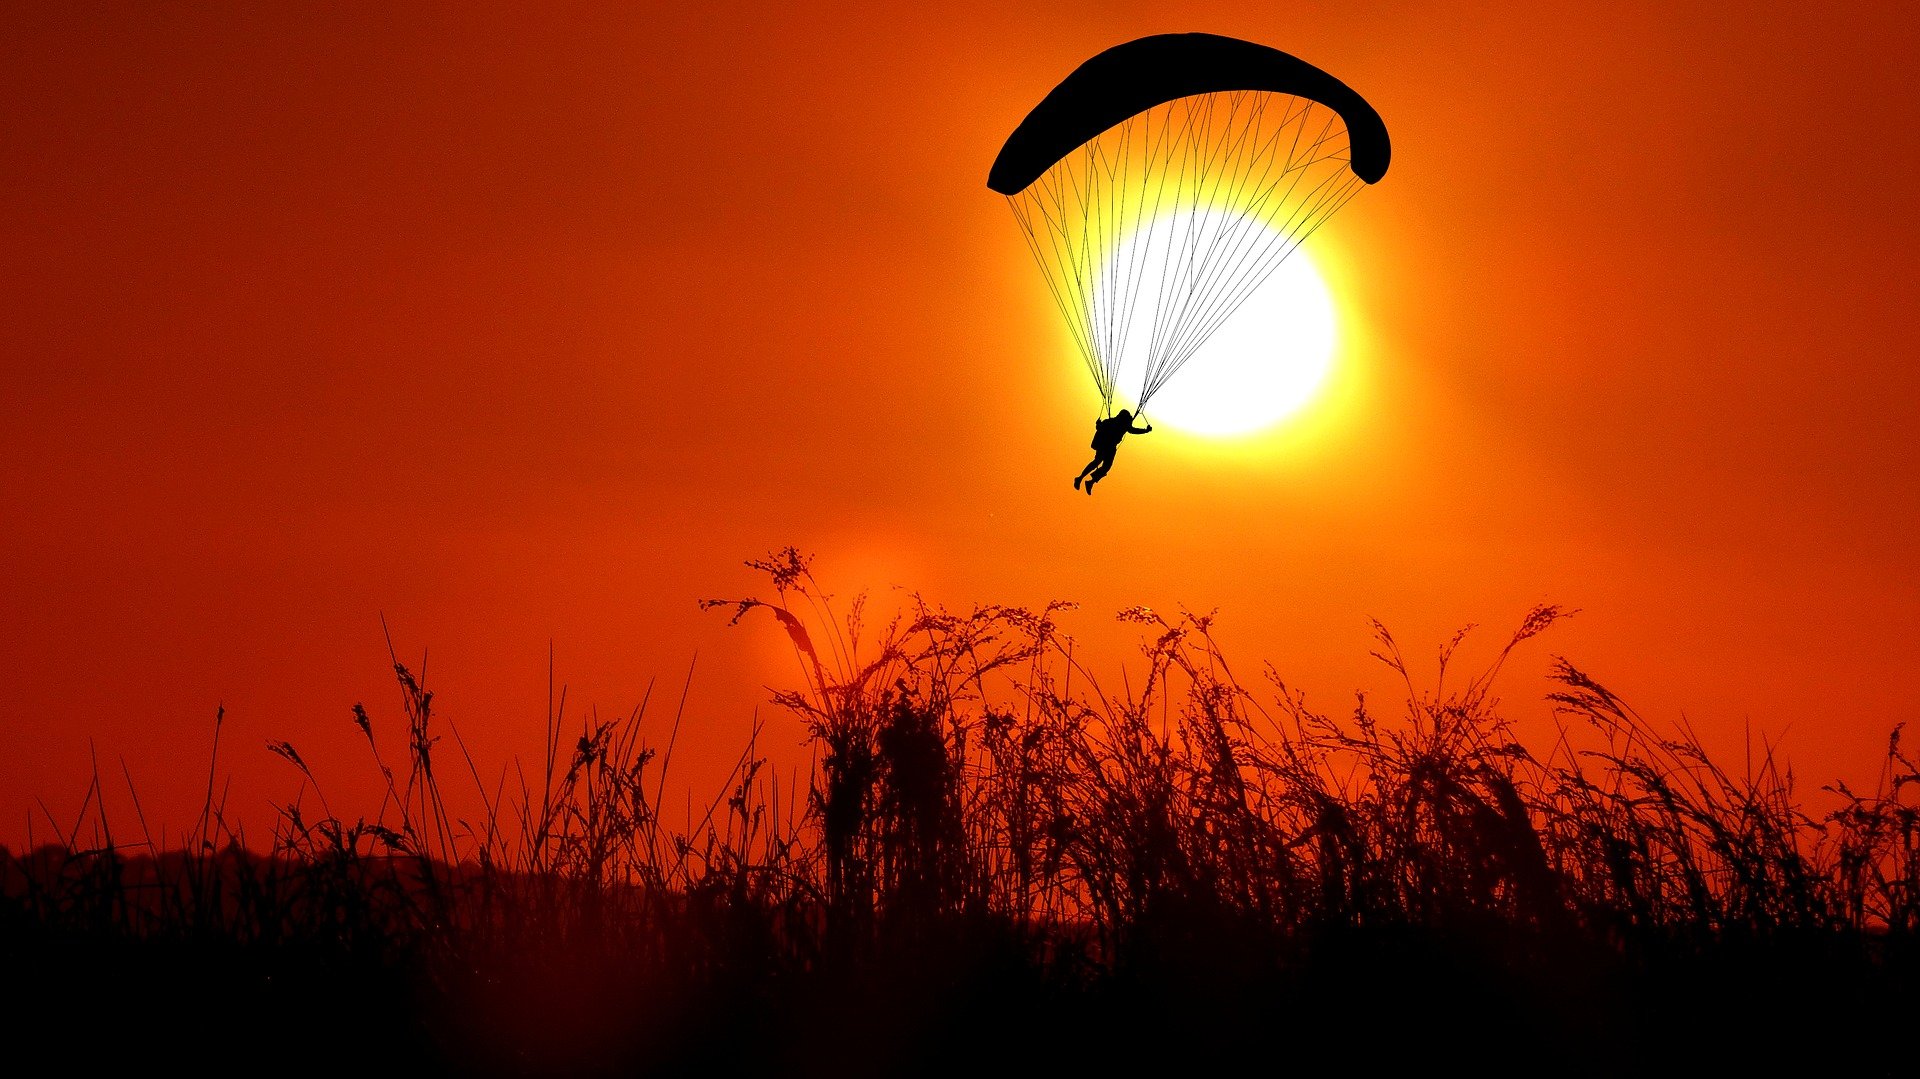 Un parachutiste pendant le coucher du soleil. | Photo : Pixabay/RENE RAUSCHENBERGER